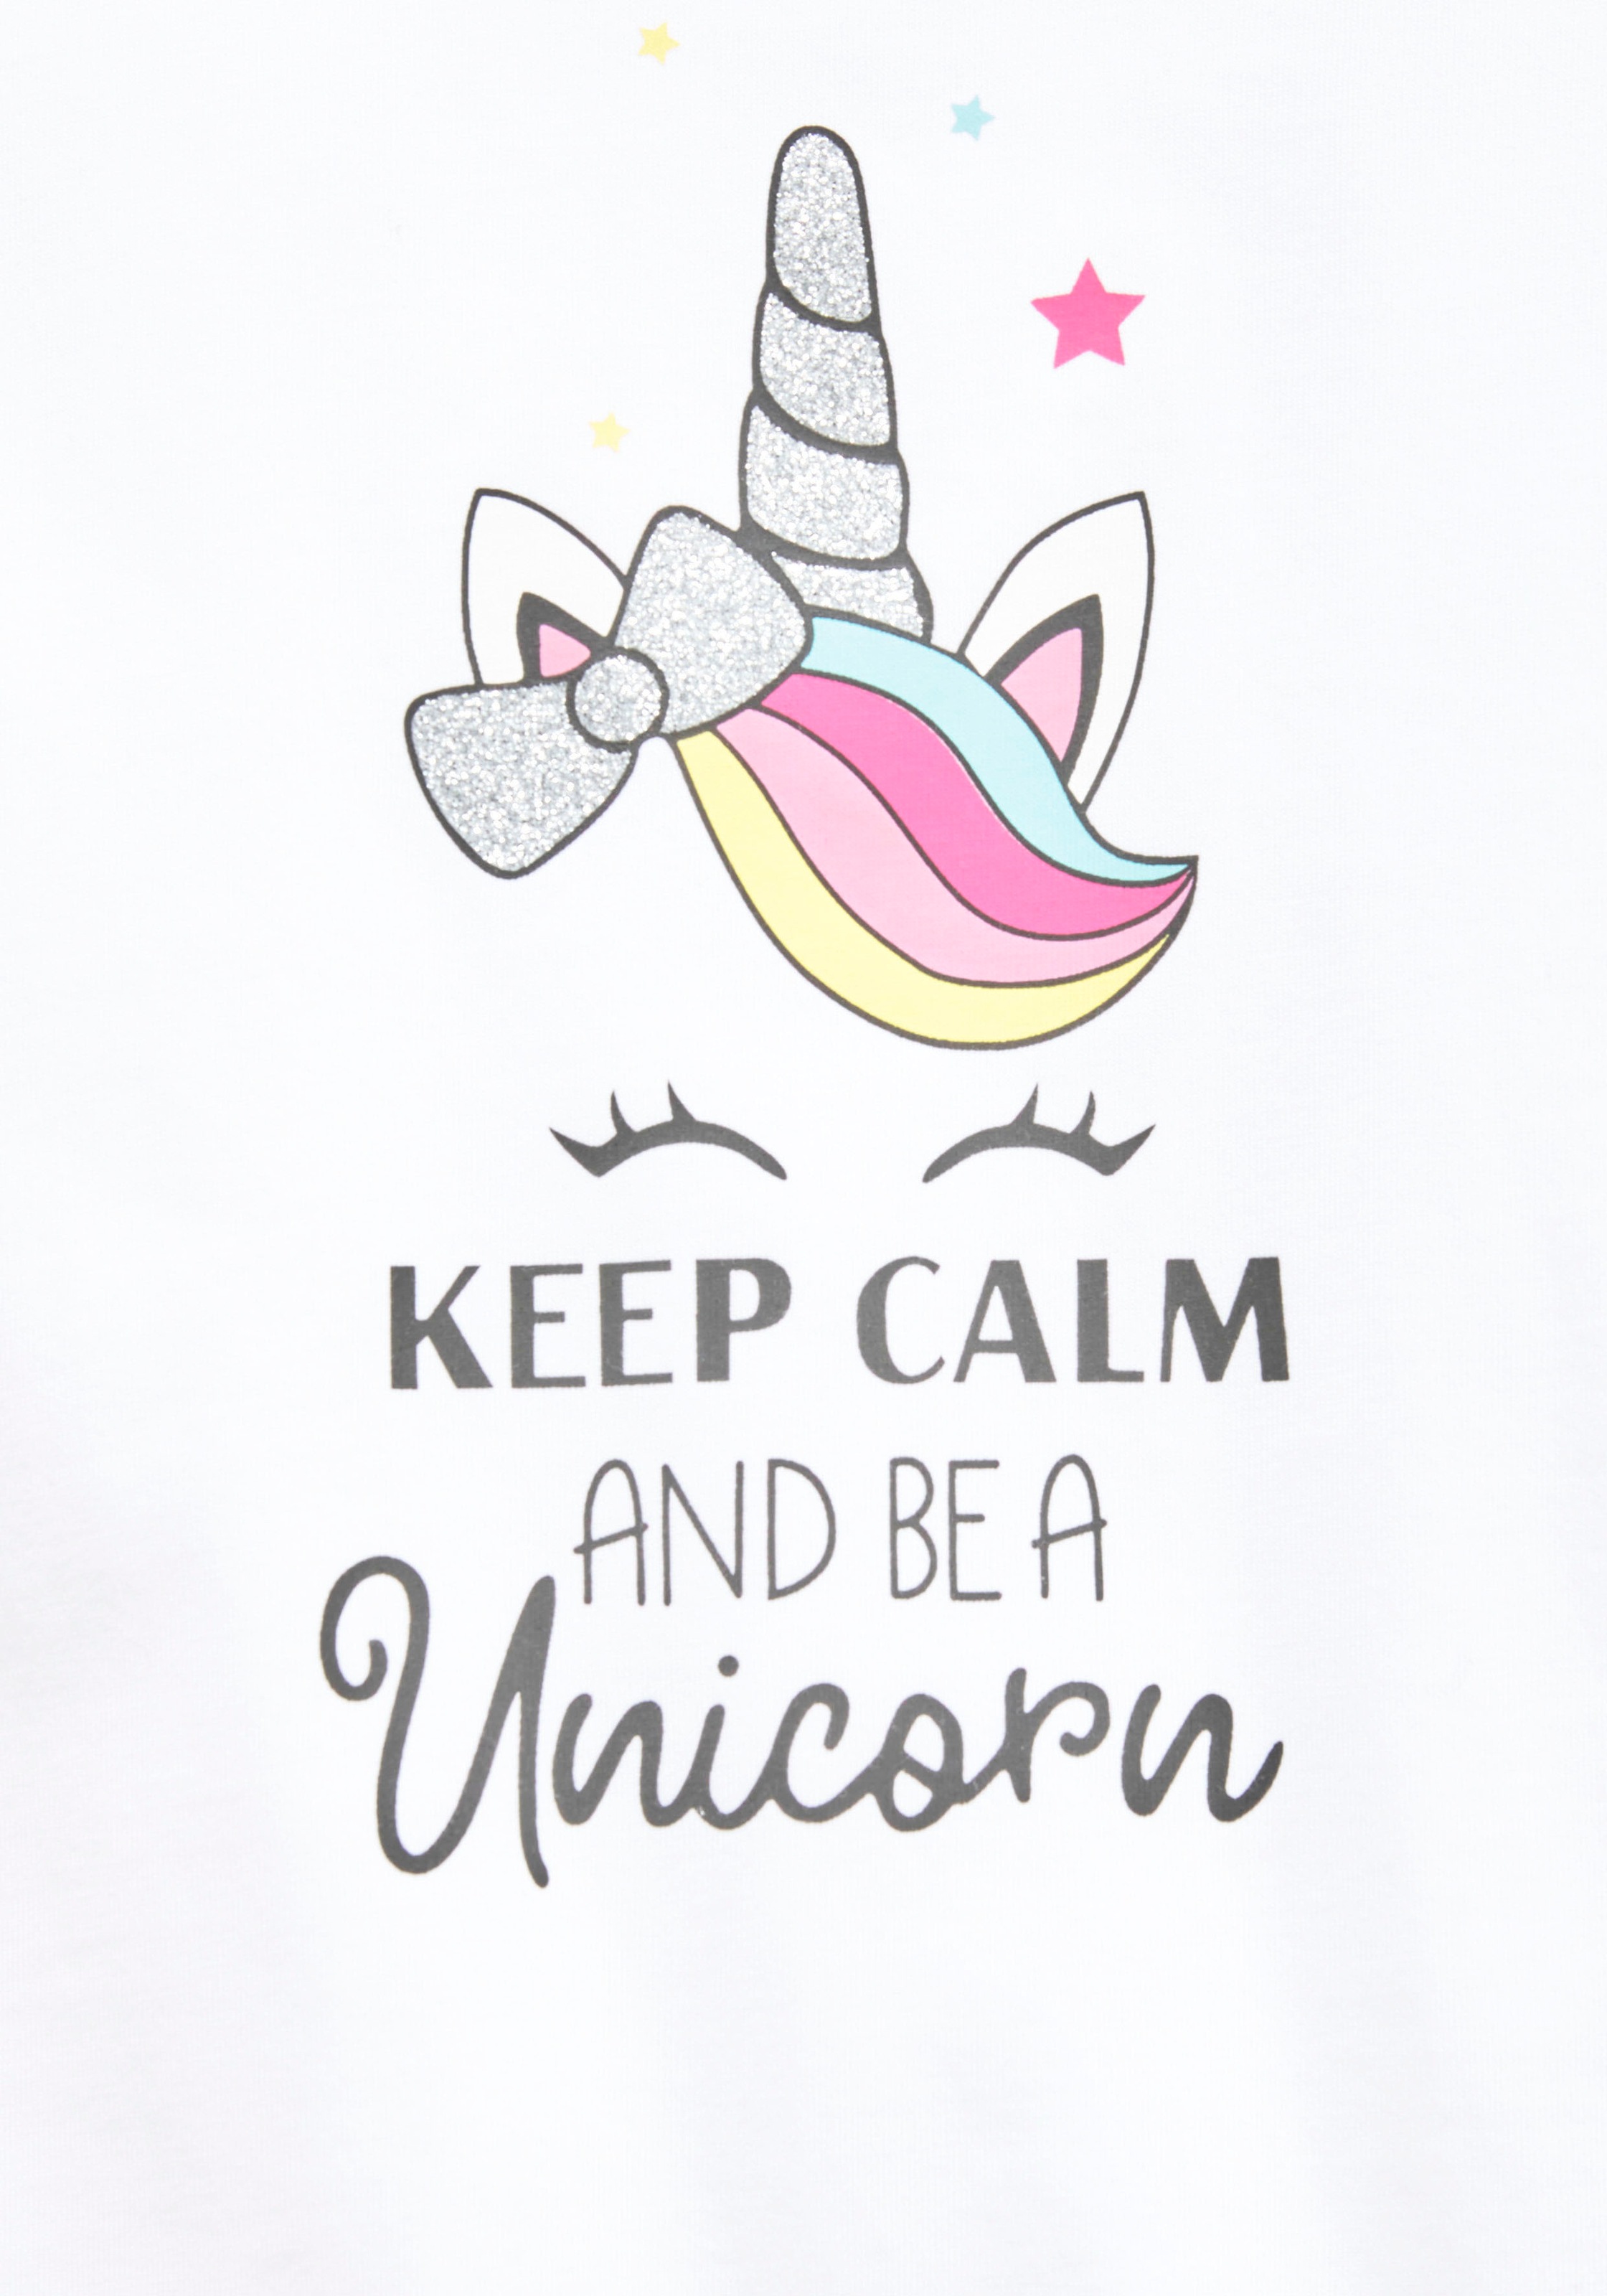 KIDSWORLD T-Shirt »keep calm and be a unicorn«, mit niedlichem Einhornmotiv  bei ♕